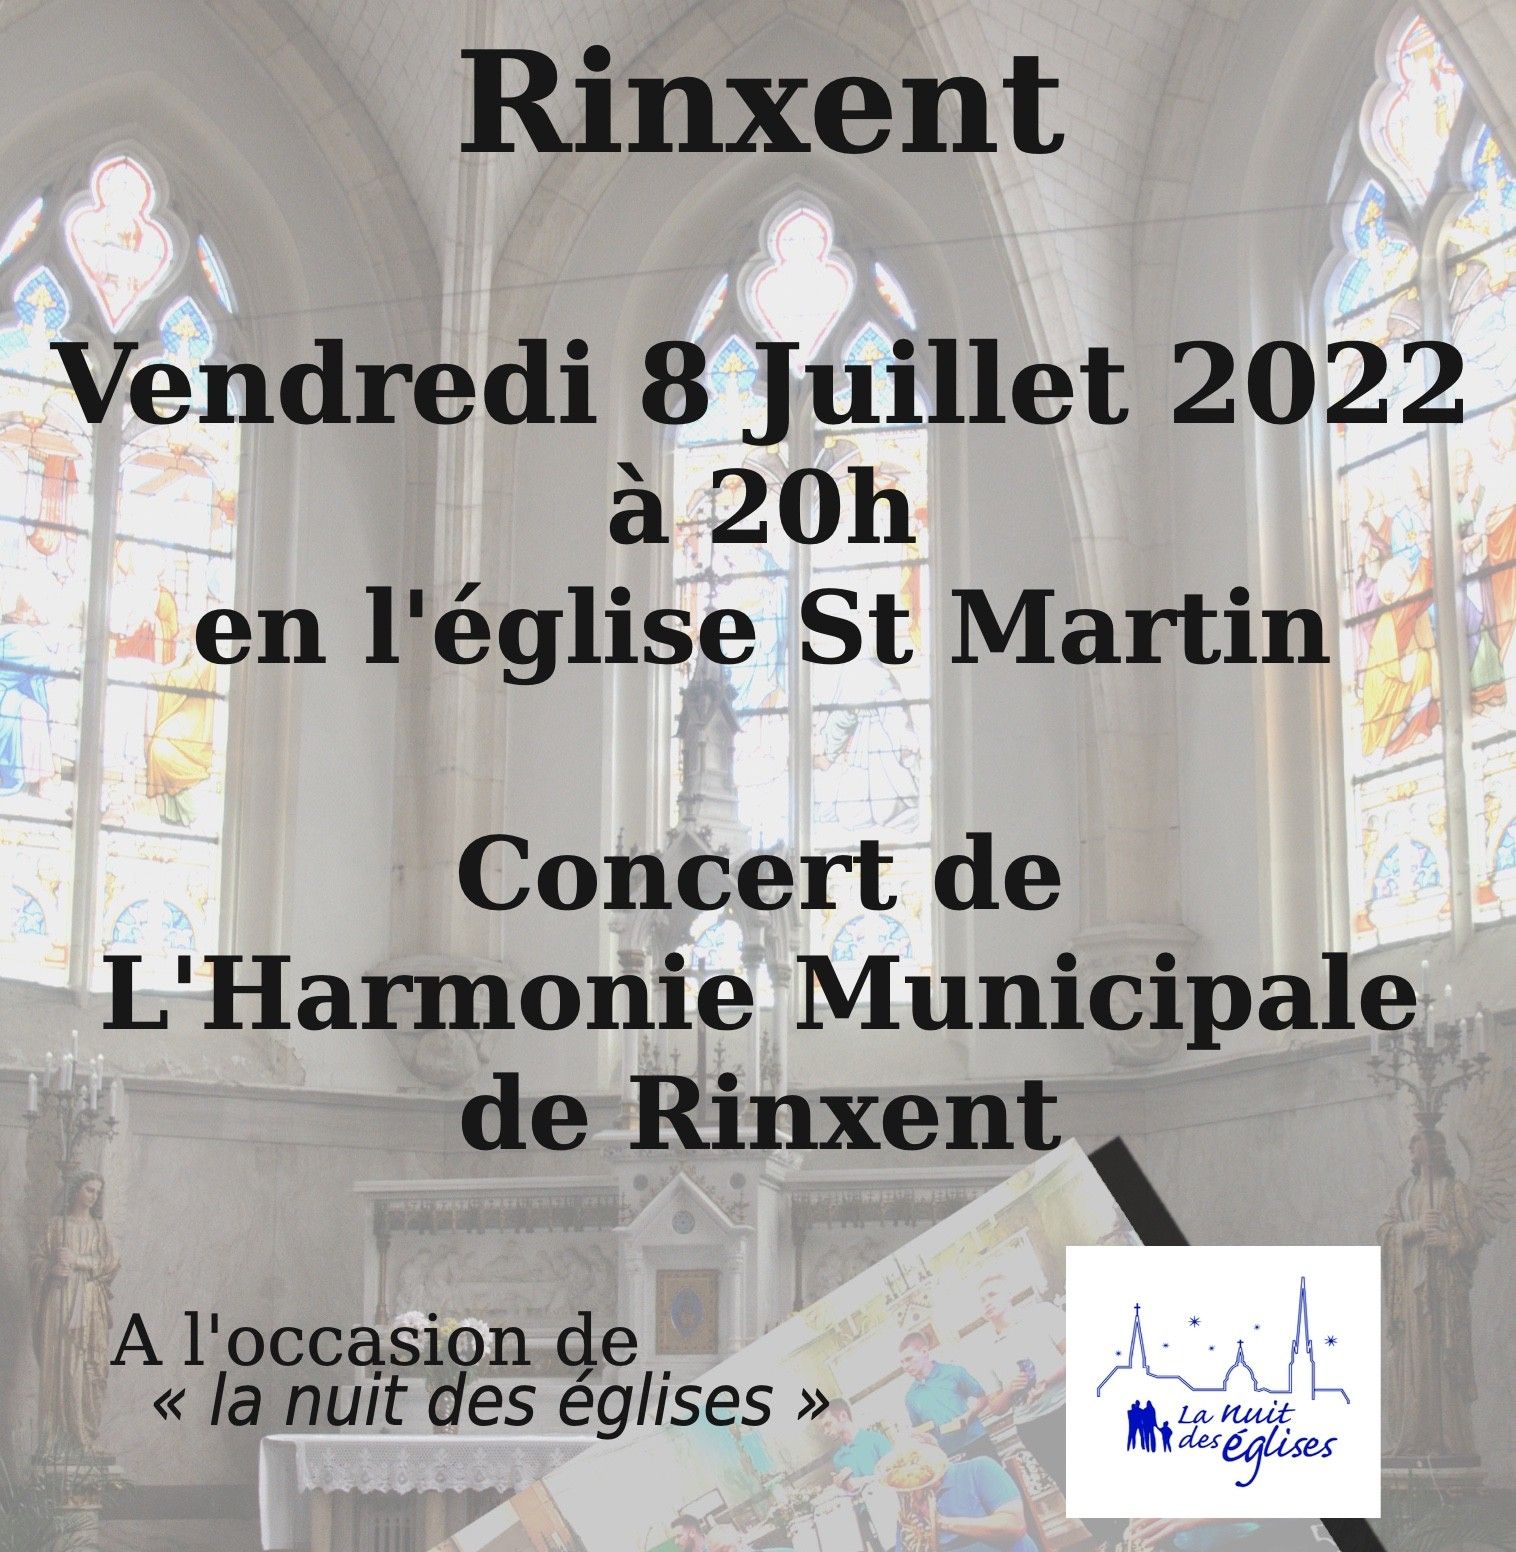 Concert de L'Harmonie Municipale de Rinxent